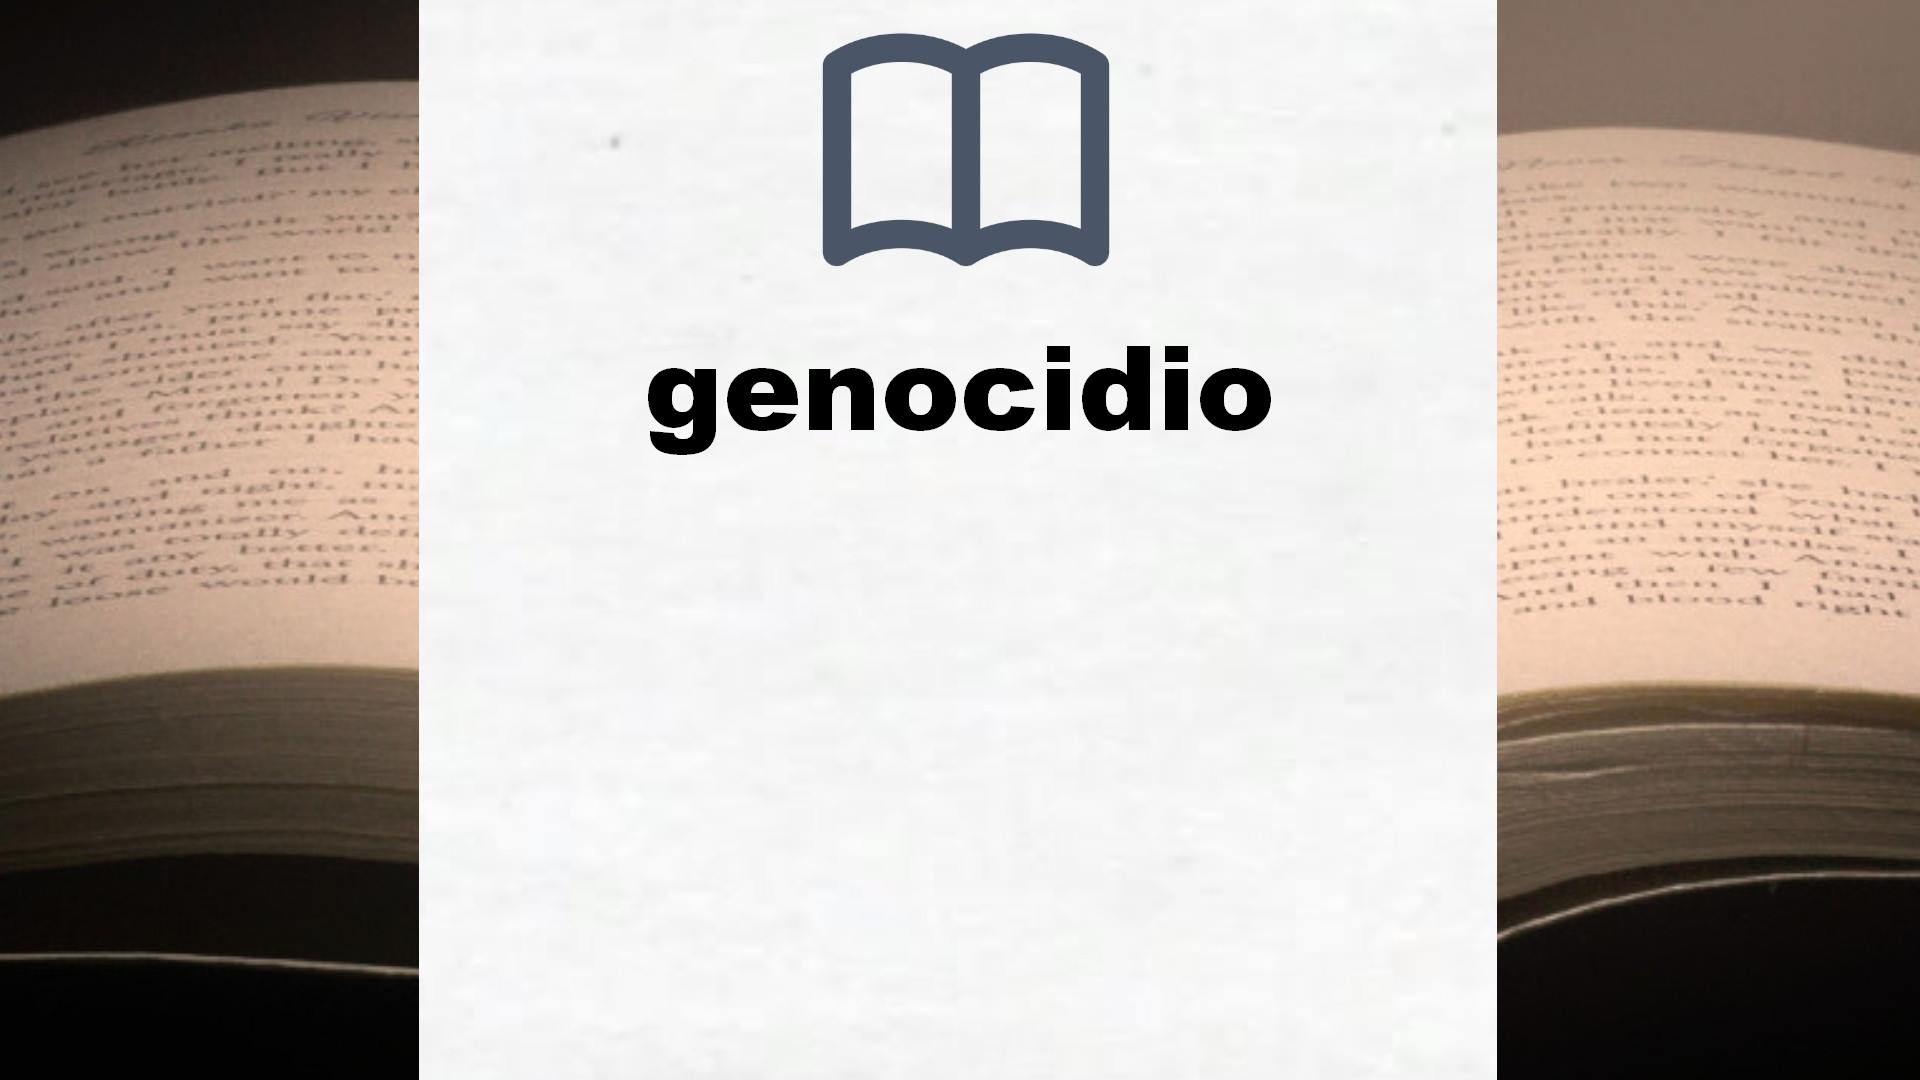 Libros sobre genocidio